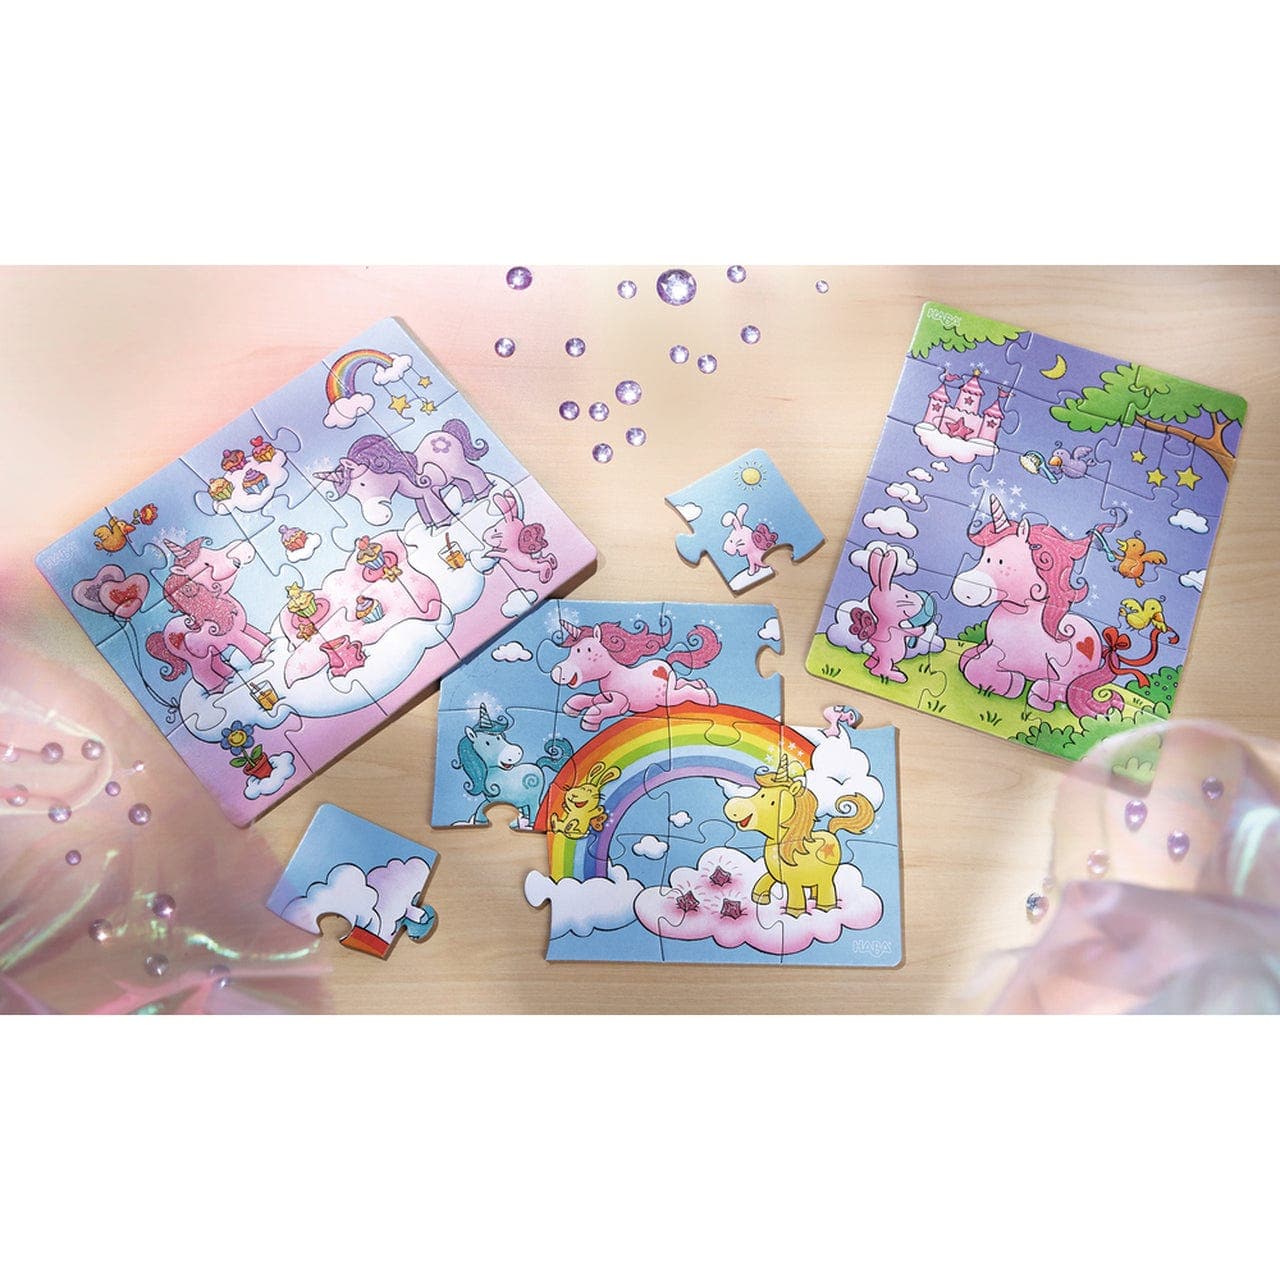 Haba-Unicorn Glitterluck Puzzles-300299-Legacy Toys